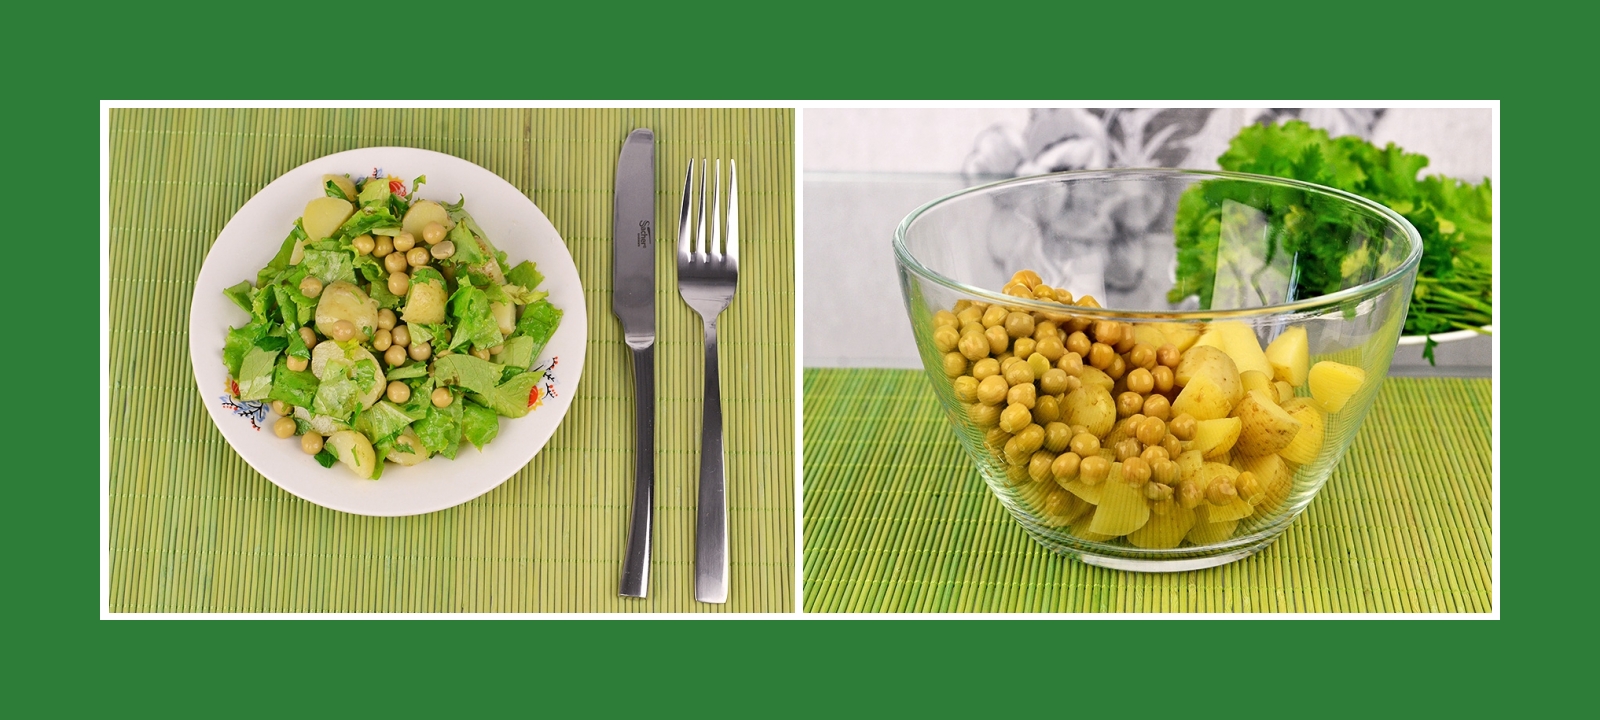 Konservierte Erbsen und Kartoffeln für Salat oder Beilage